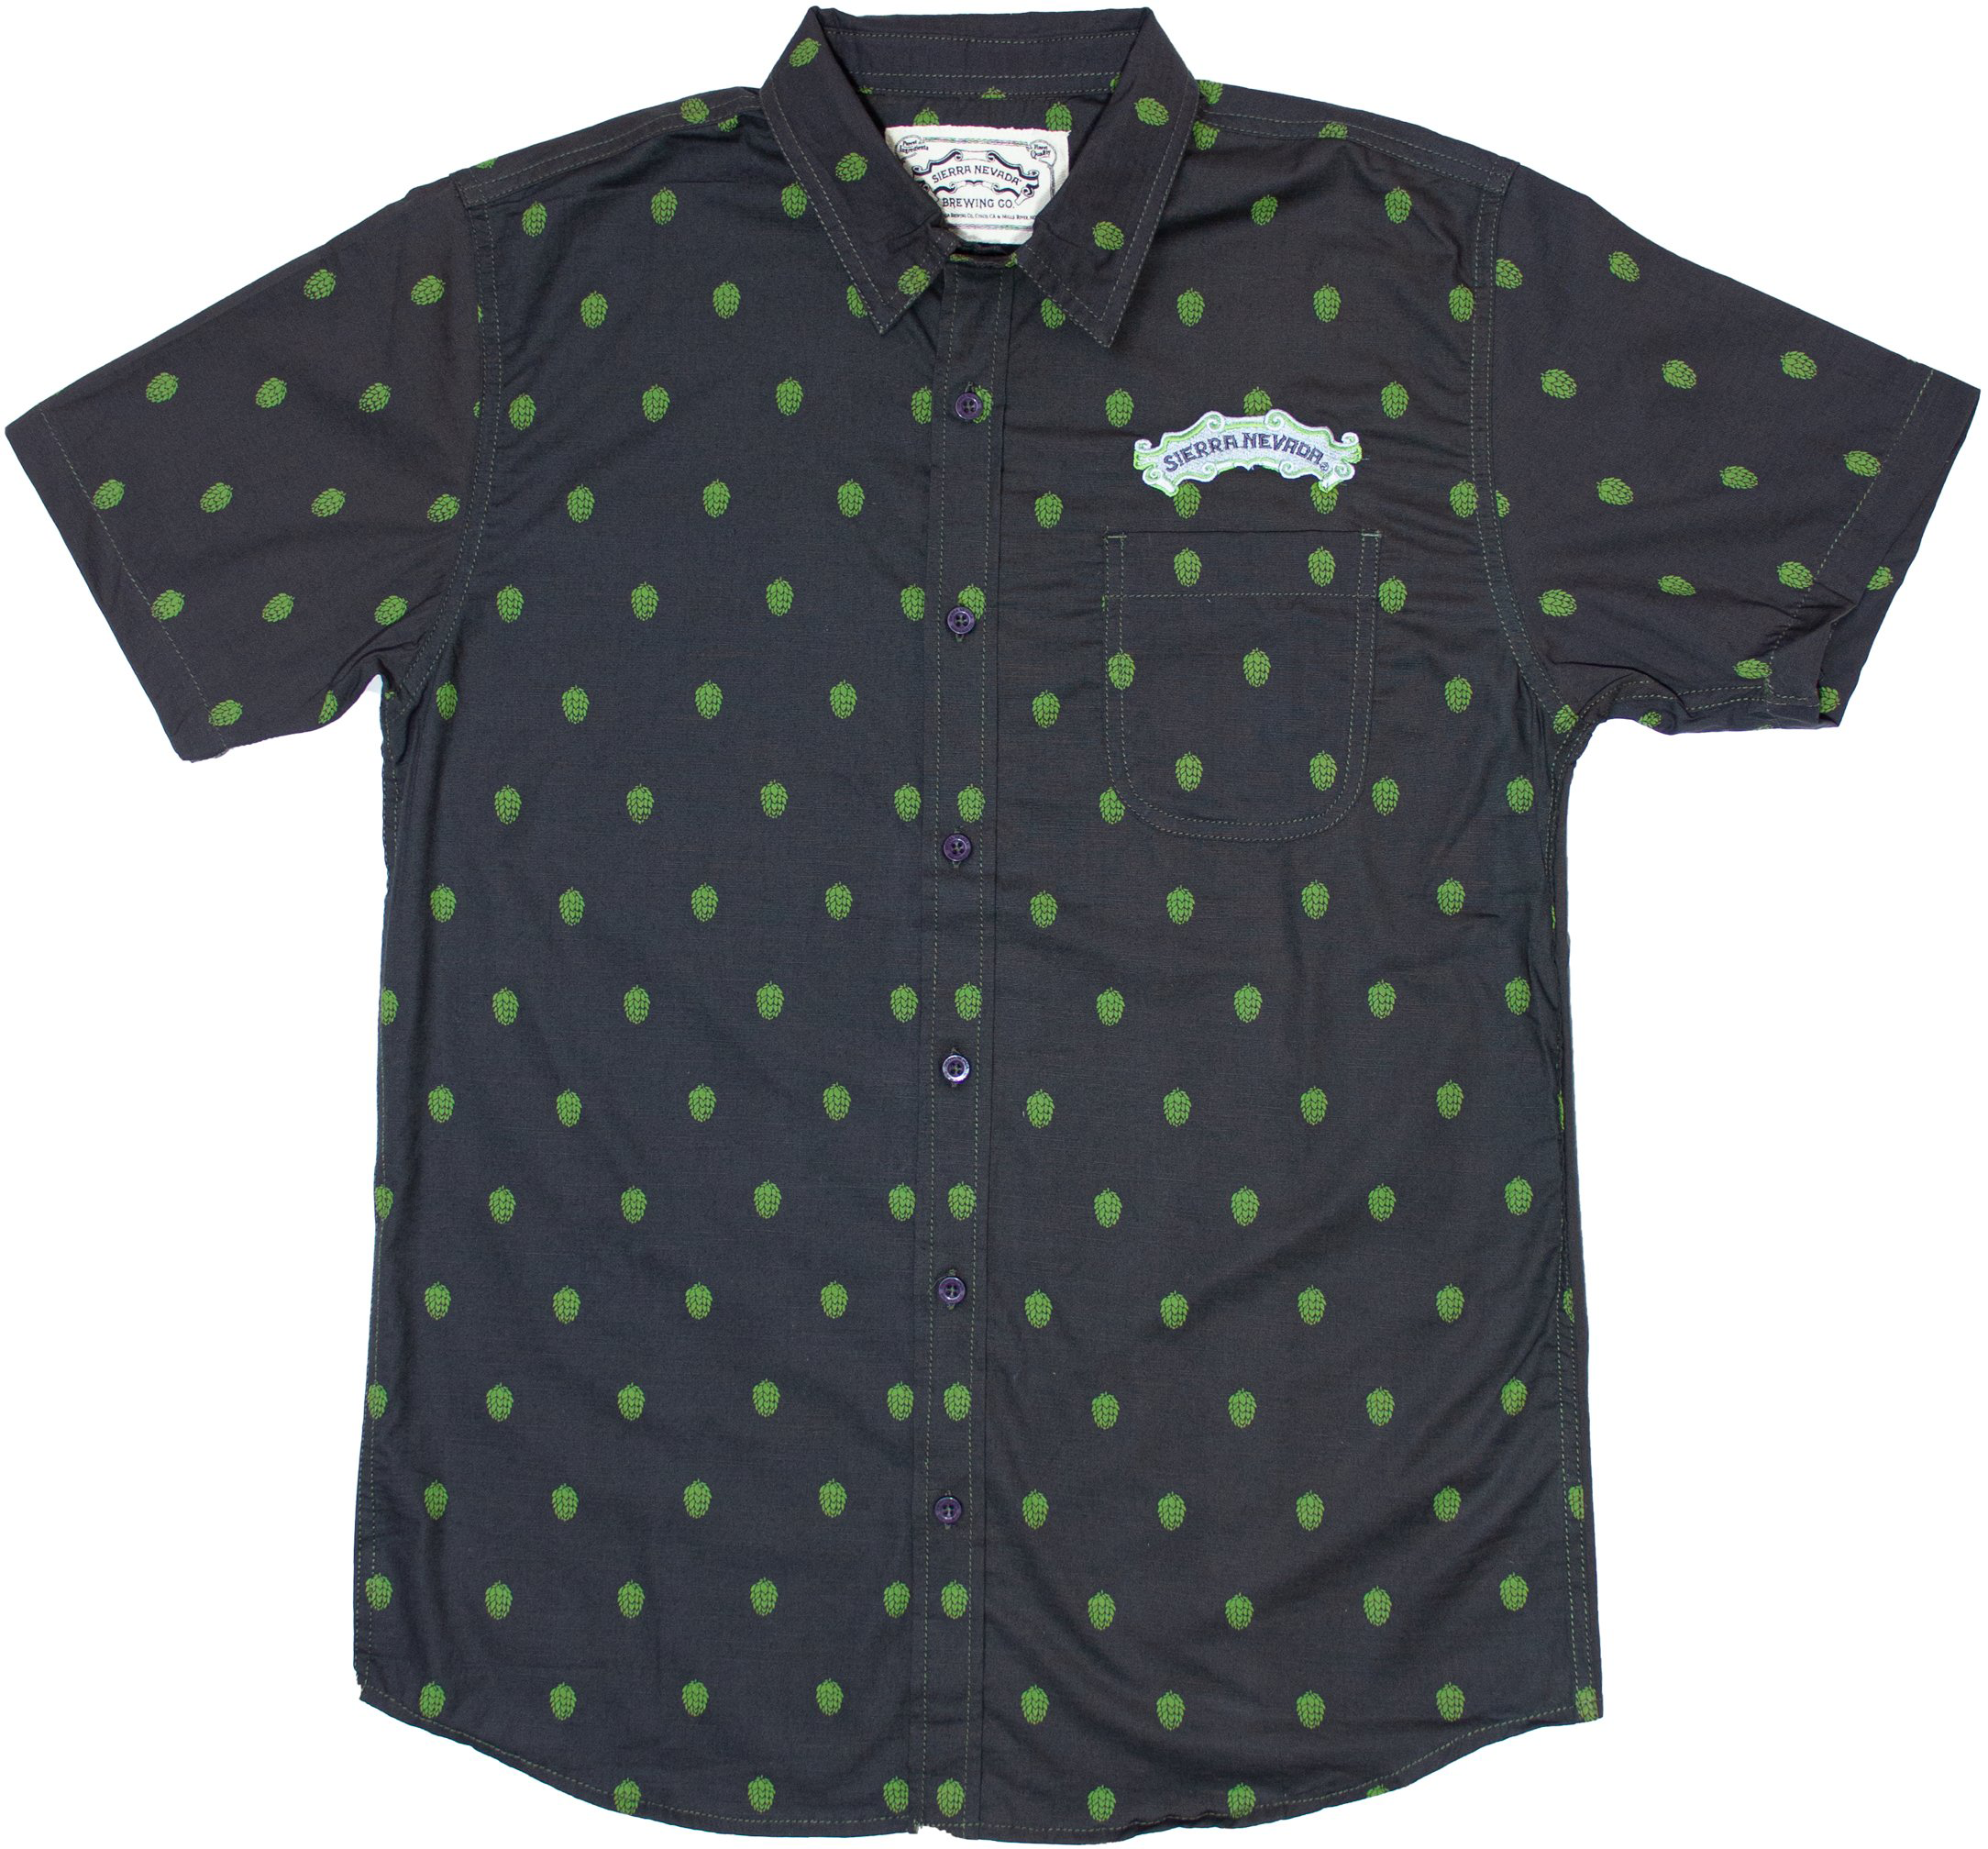 Sierra Nevada Men's Hop Custom Button Up Shirt with hop print